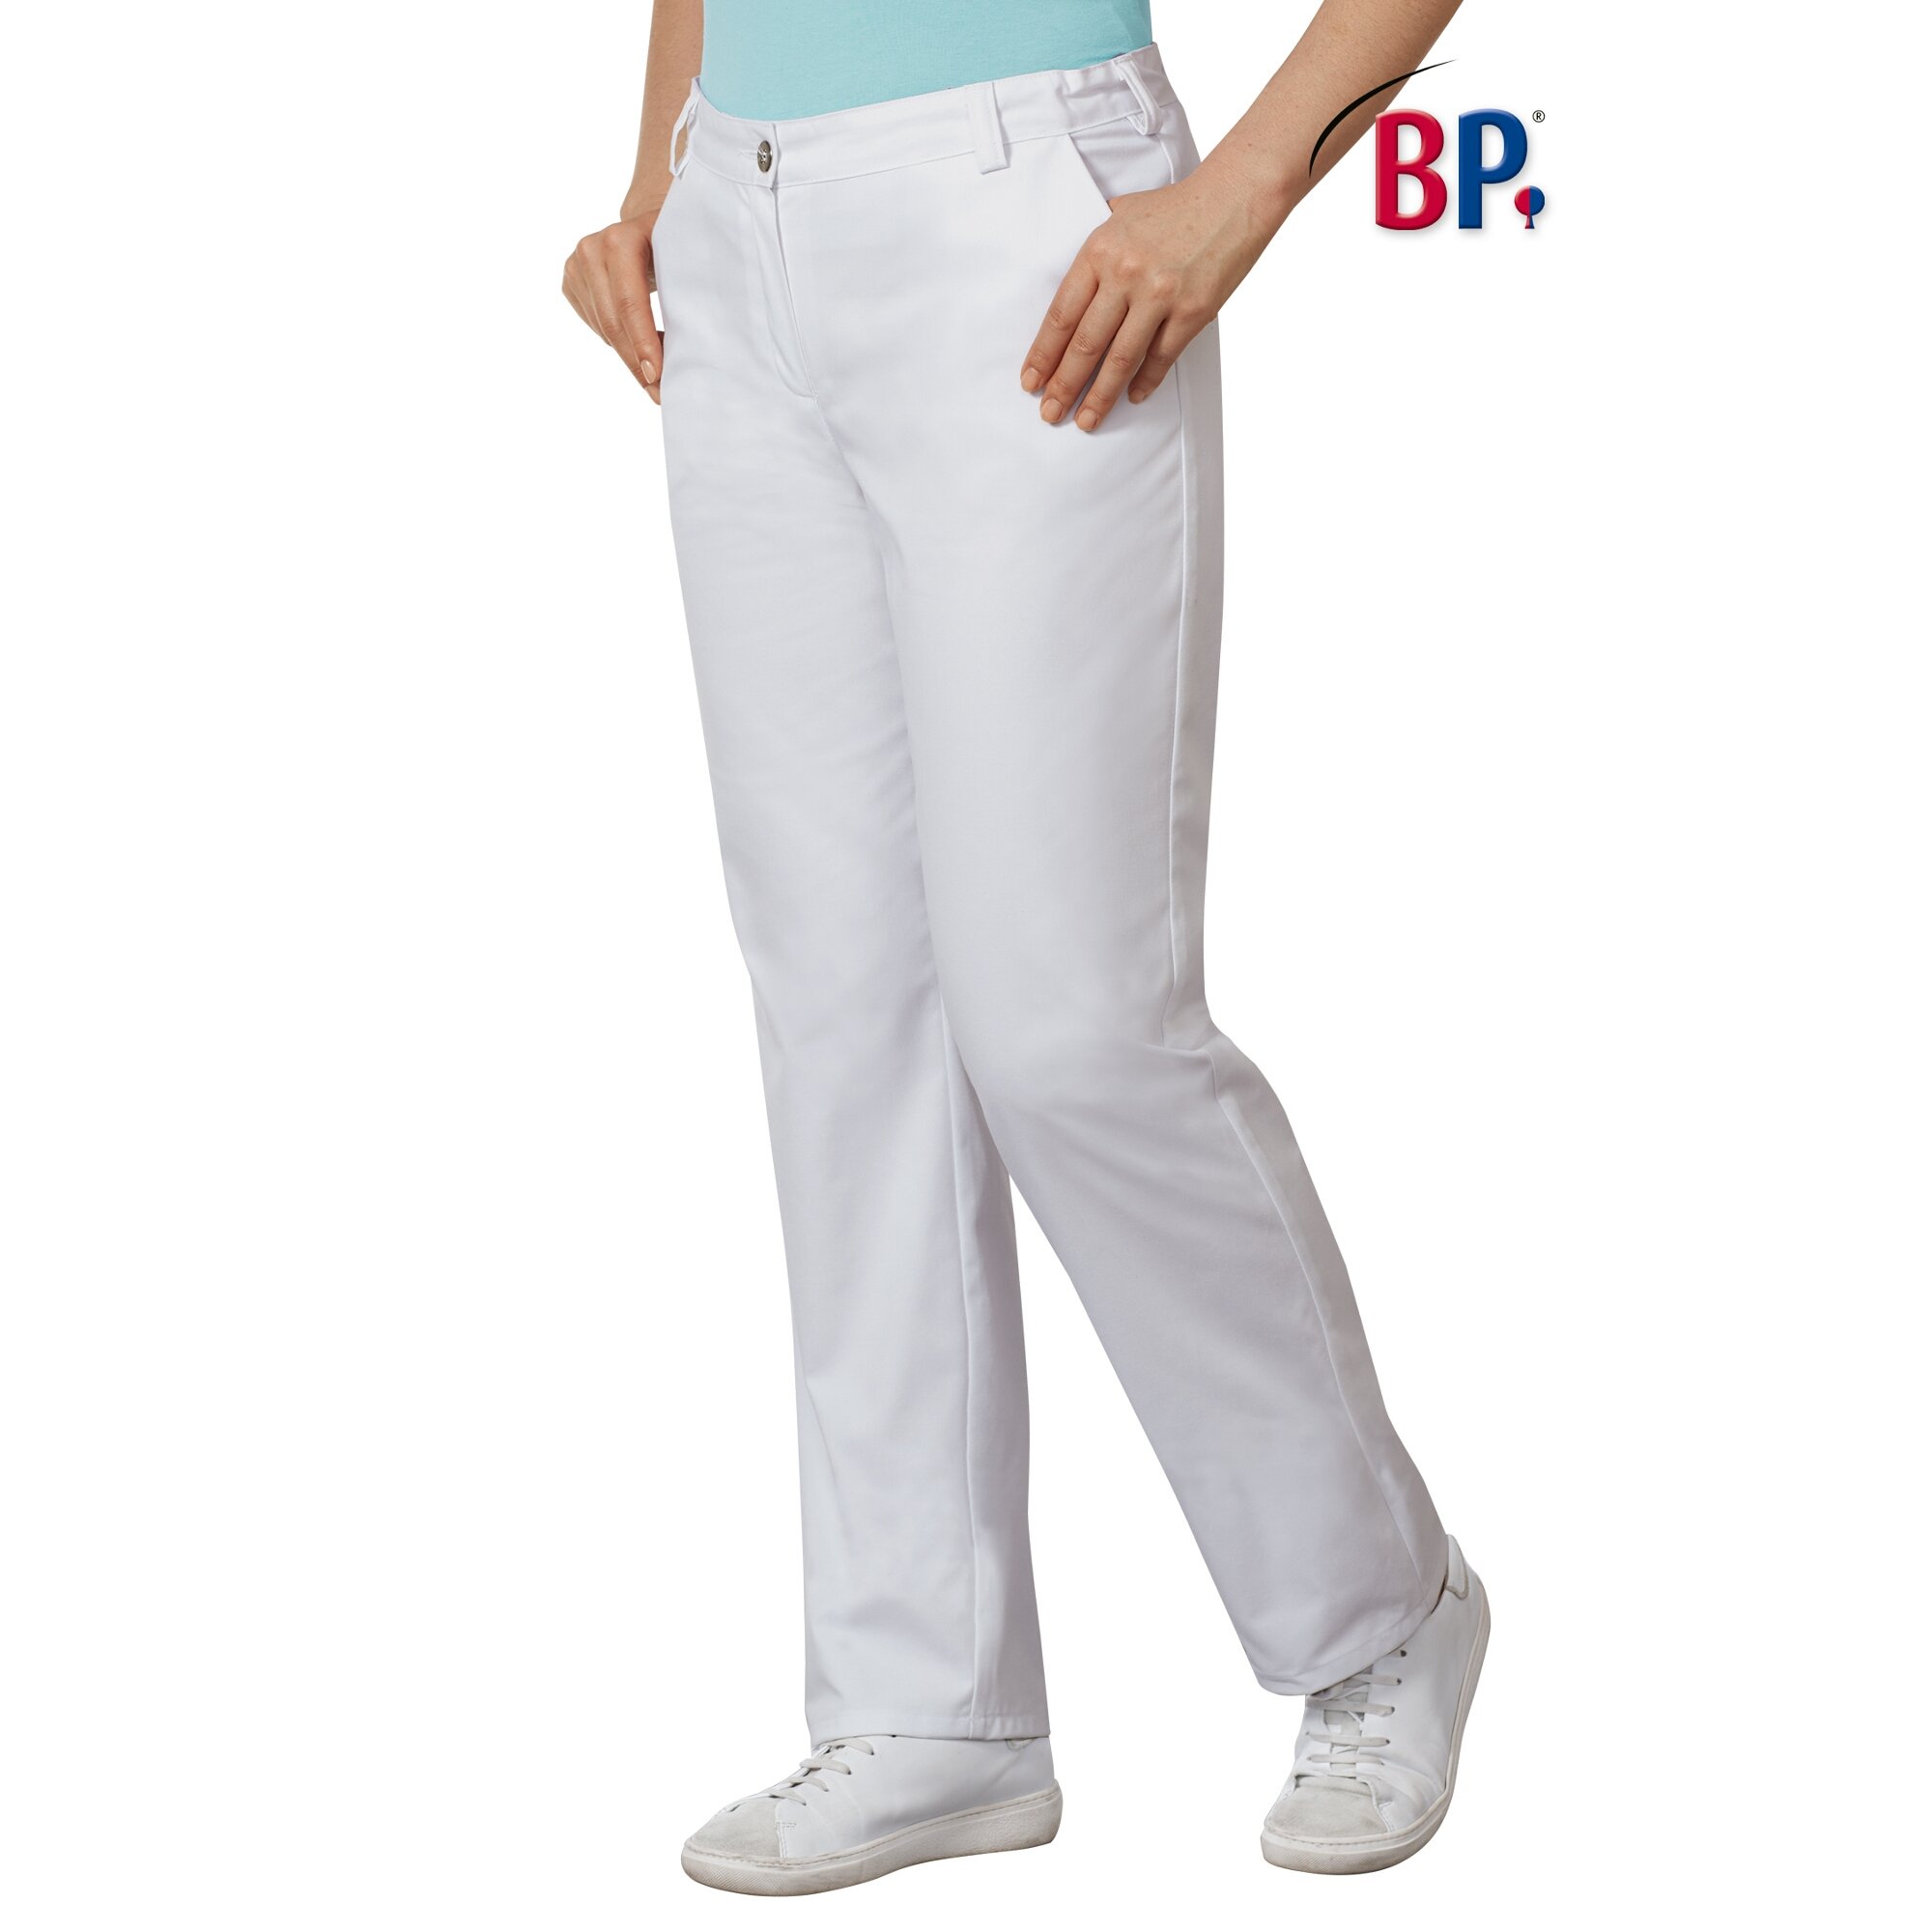 BP® Med-System Damen-Hose